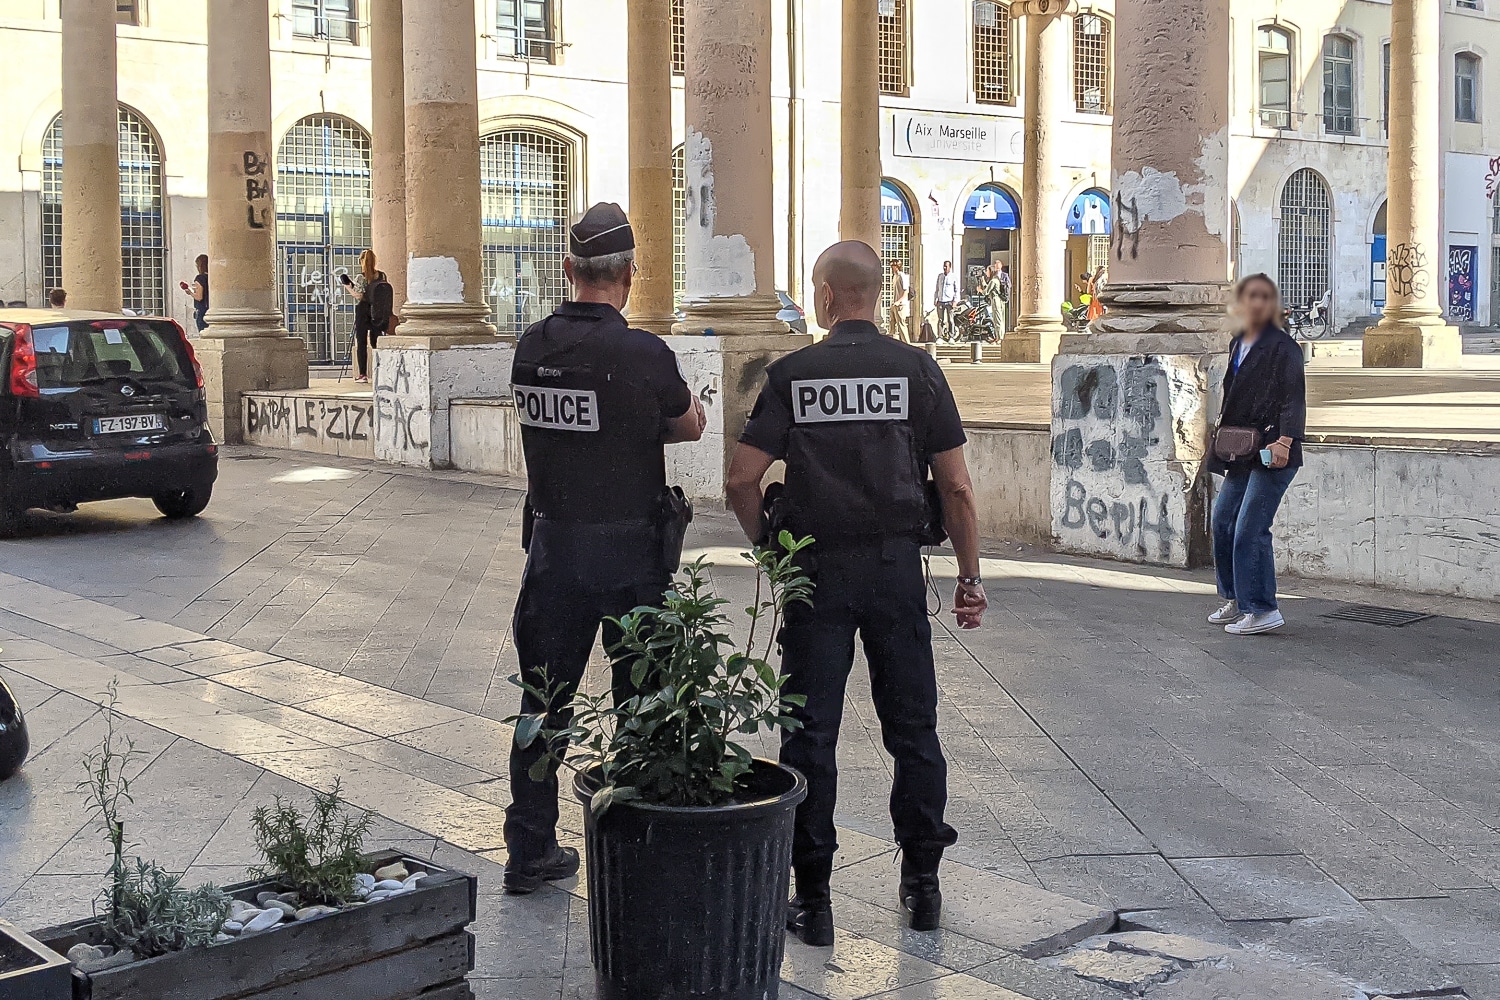 policière, Fermée pour cause d&rsquo;insécurité, la fac Colbert rouvre sous protection policière, Made in Marseille